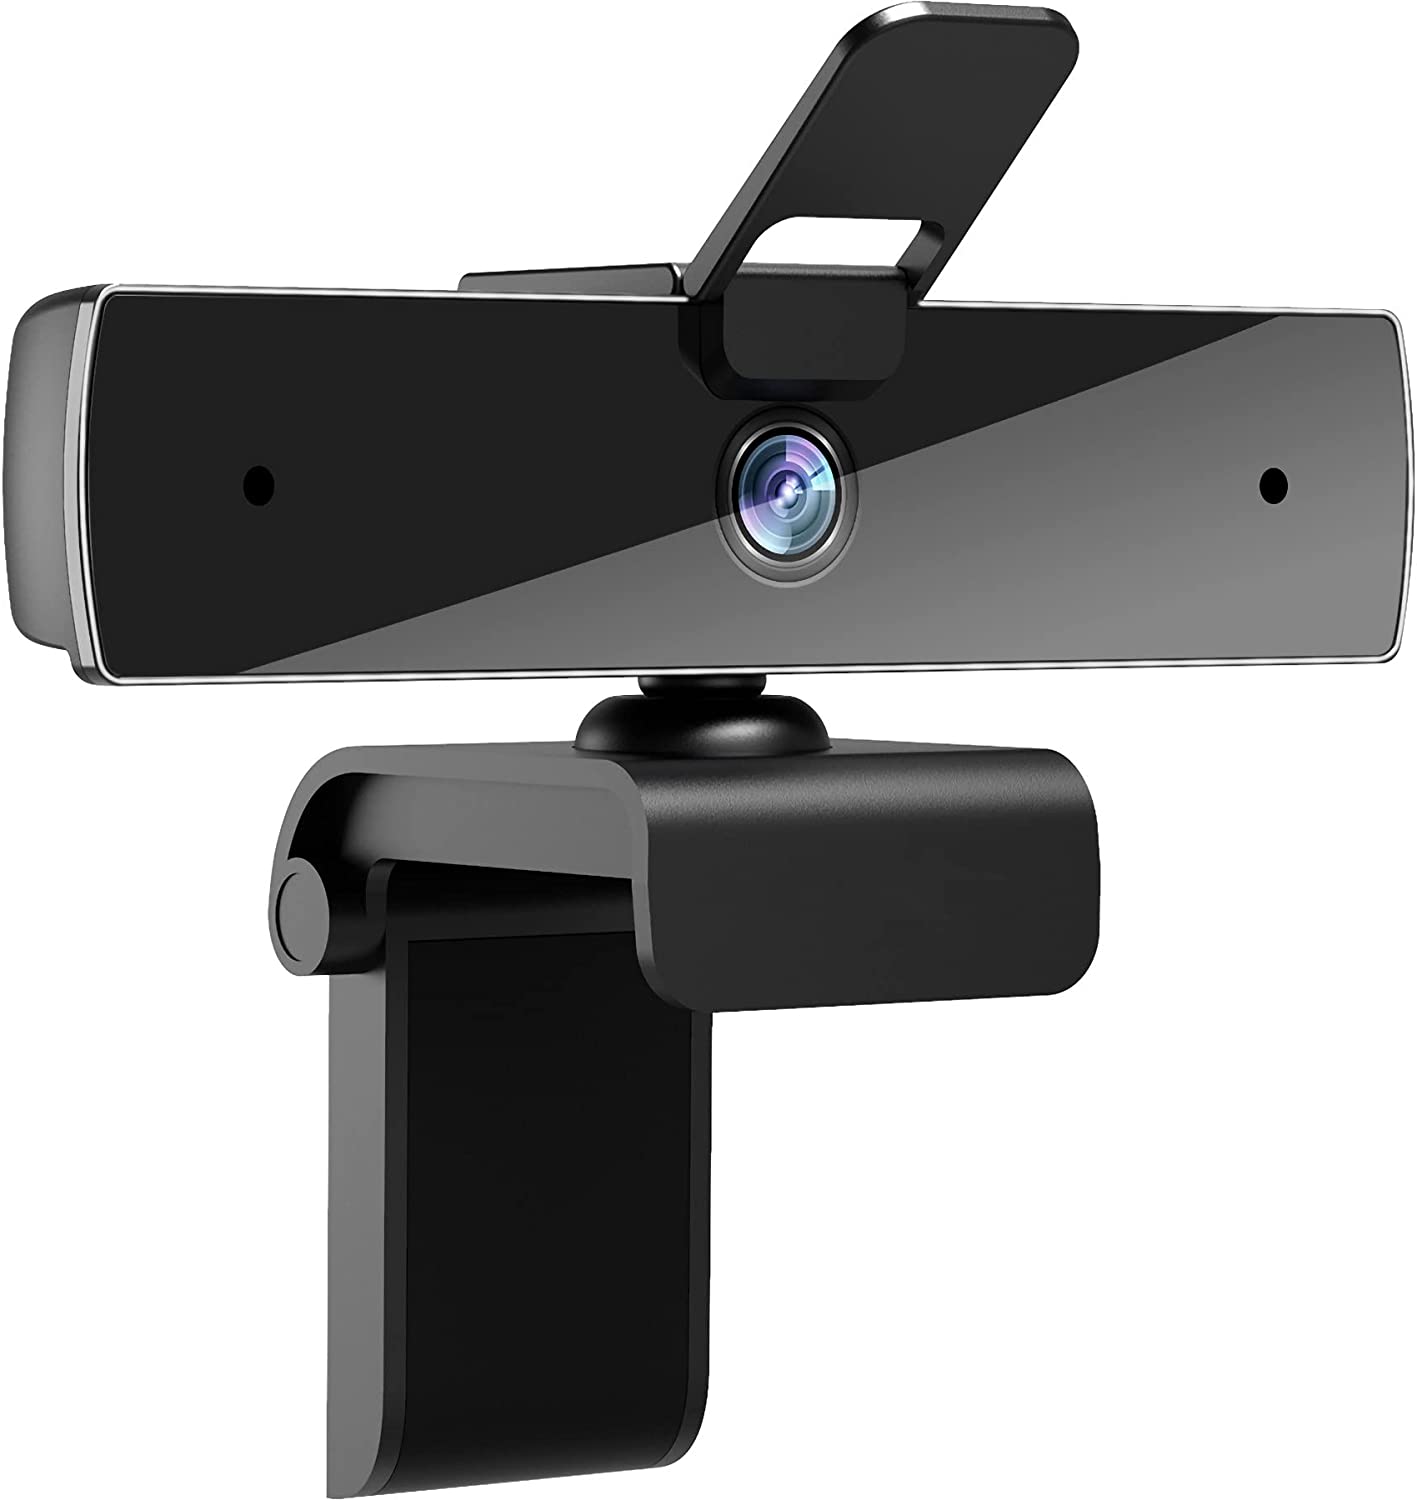 마이크와 개인 정보 보호 커버가 있는 Qtniue Webcam, FHD Webcam 1080p, 데스크톱 또는 노트북, 비디오 통화, 스테레오 스트리밍 및 온라인 클래스용 스마트 TV USB 카메라